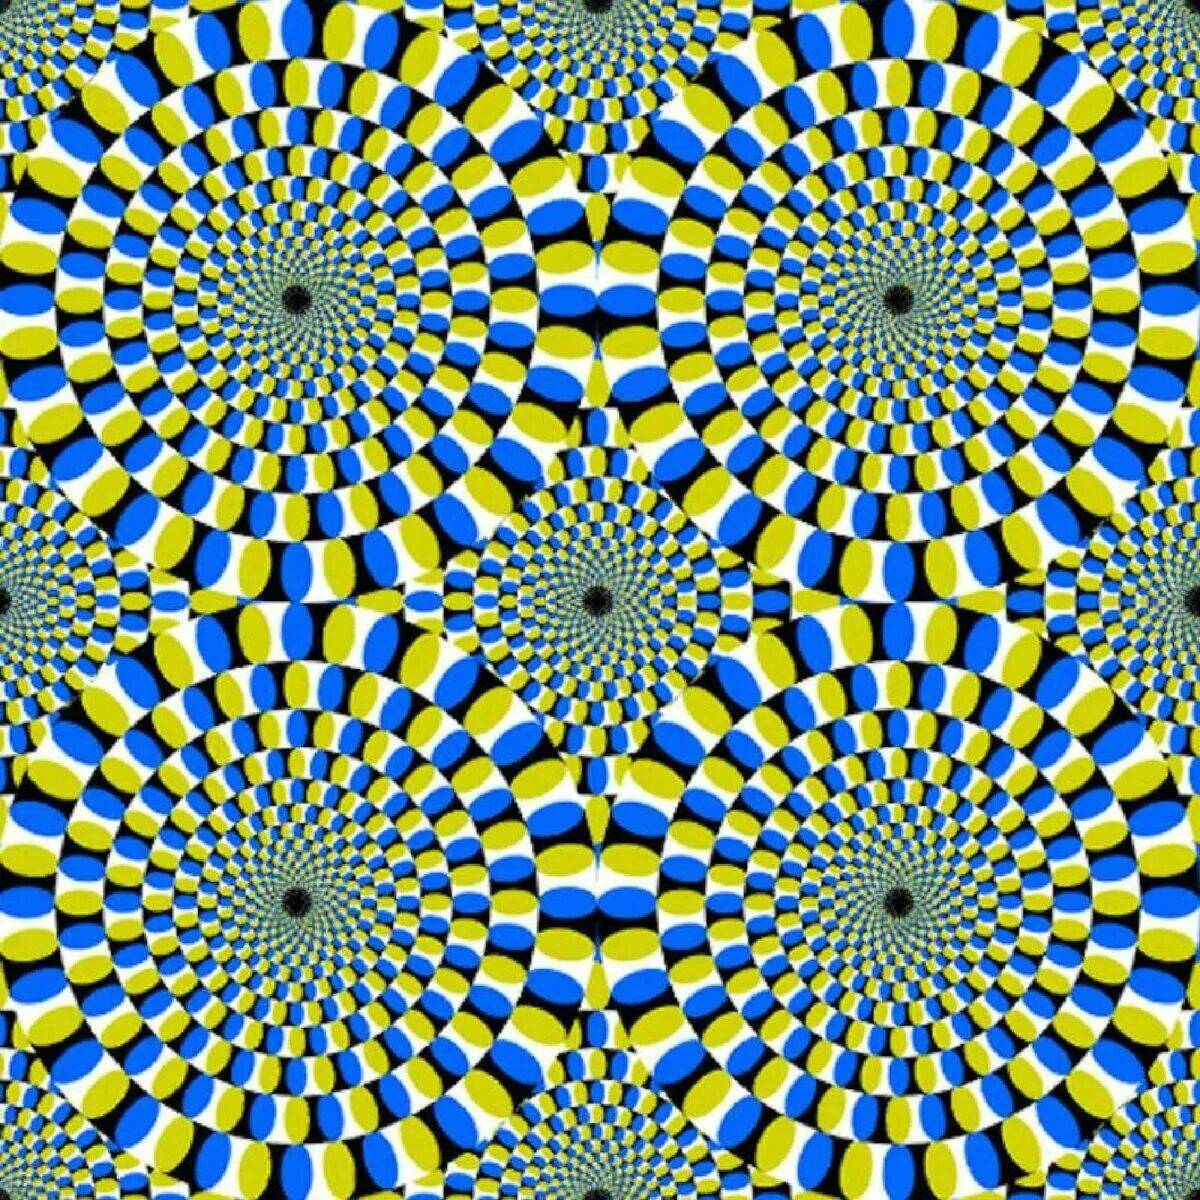 оптические иллюзии картинки обманы зрения самые лучшие